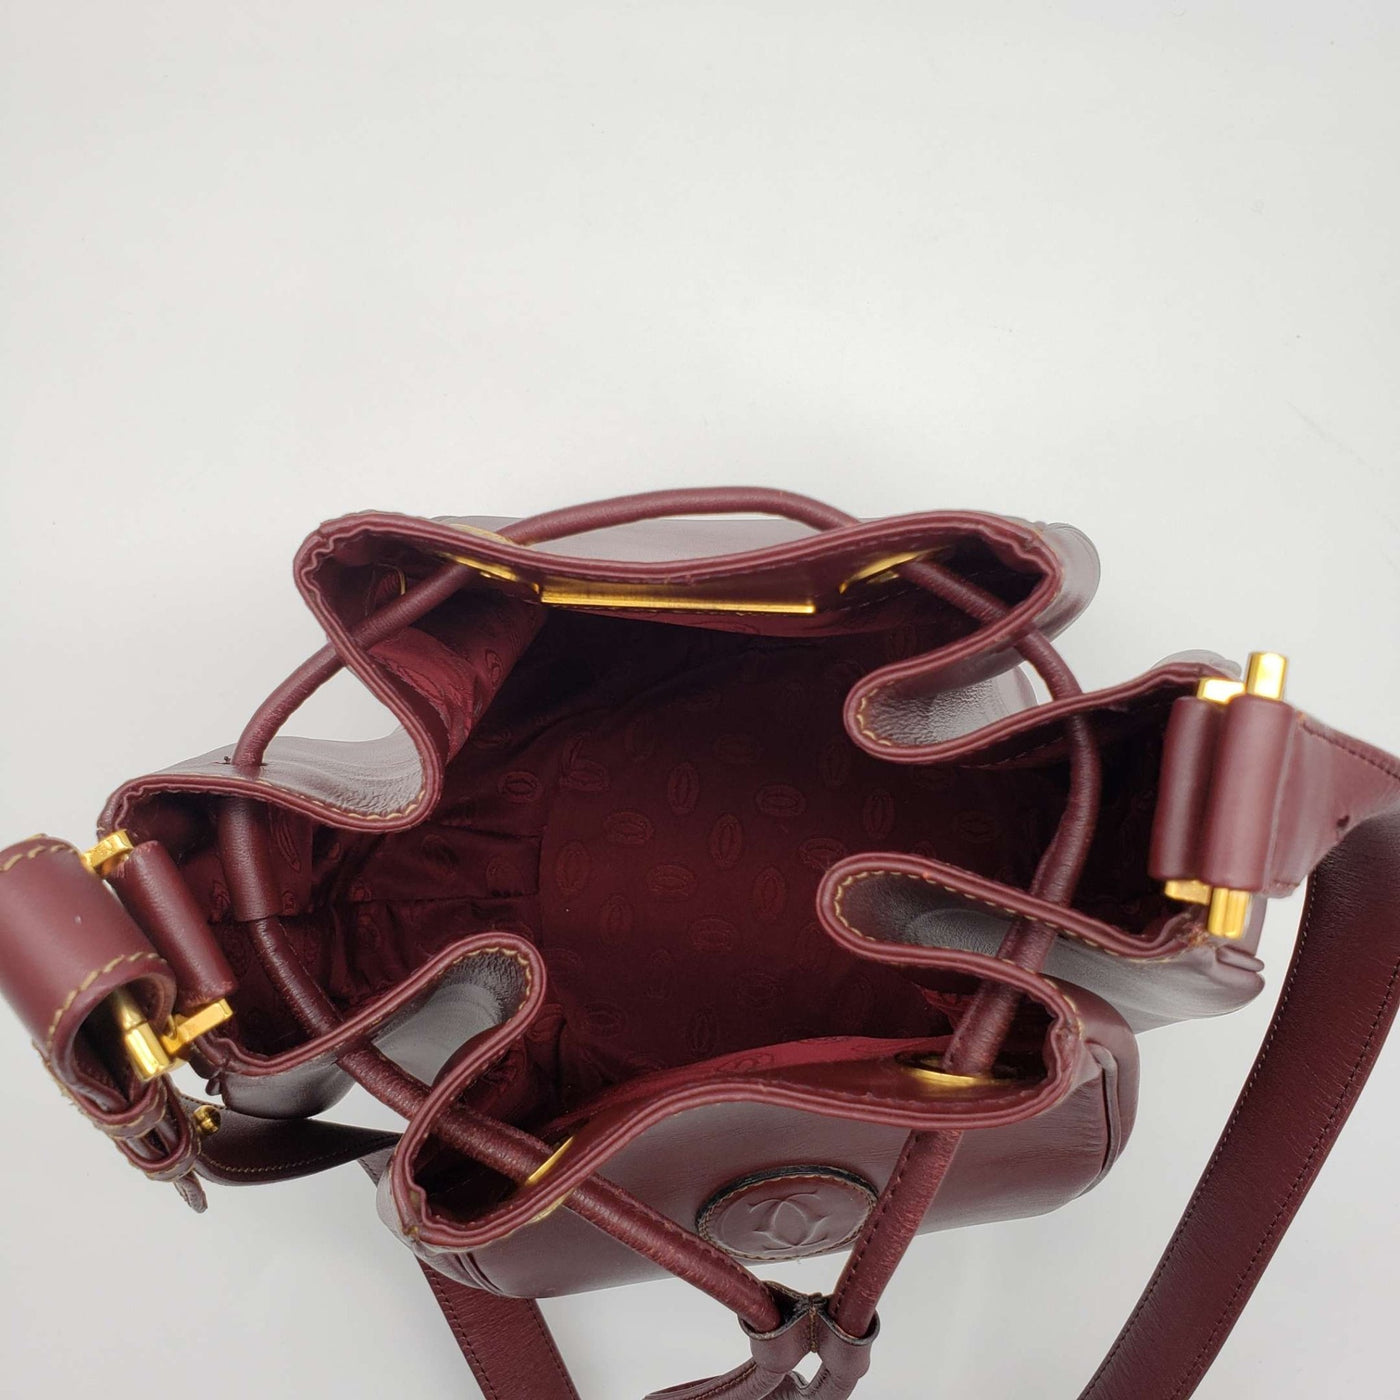 Must De Cartier Bordeaux Leather Shoulder Bag - Luxury Cheaper